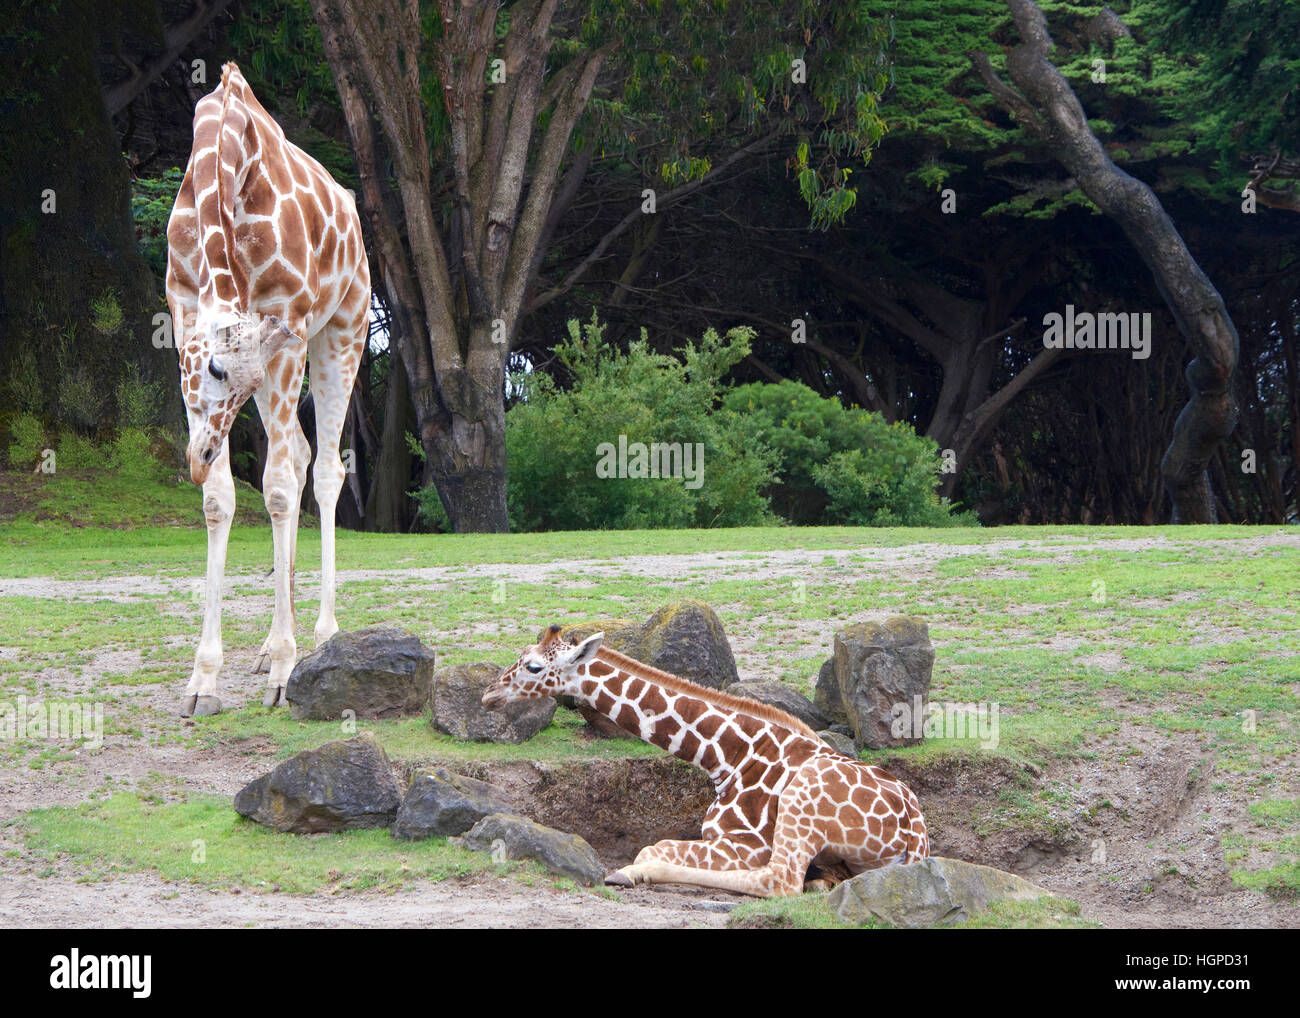 Mutter Giraffe Biegen bis Blick auf Baby auf dem Boden liegend, Förderung der Youngster aufstehen, Green grass, Felsen rund um Bäume im Hintergrund. Land Stockfoto